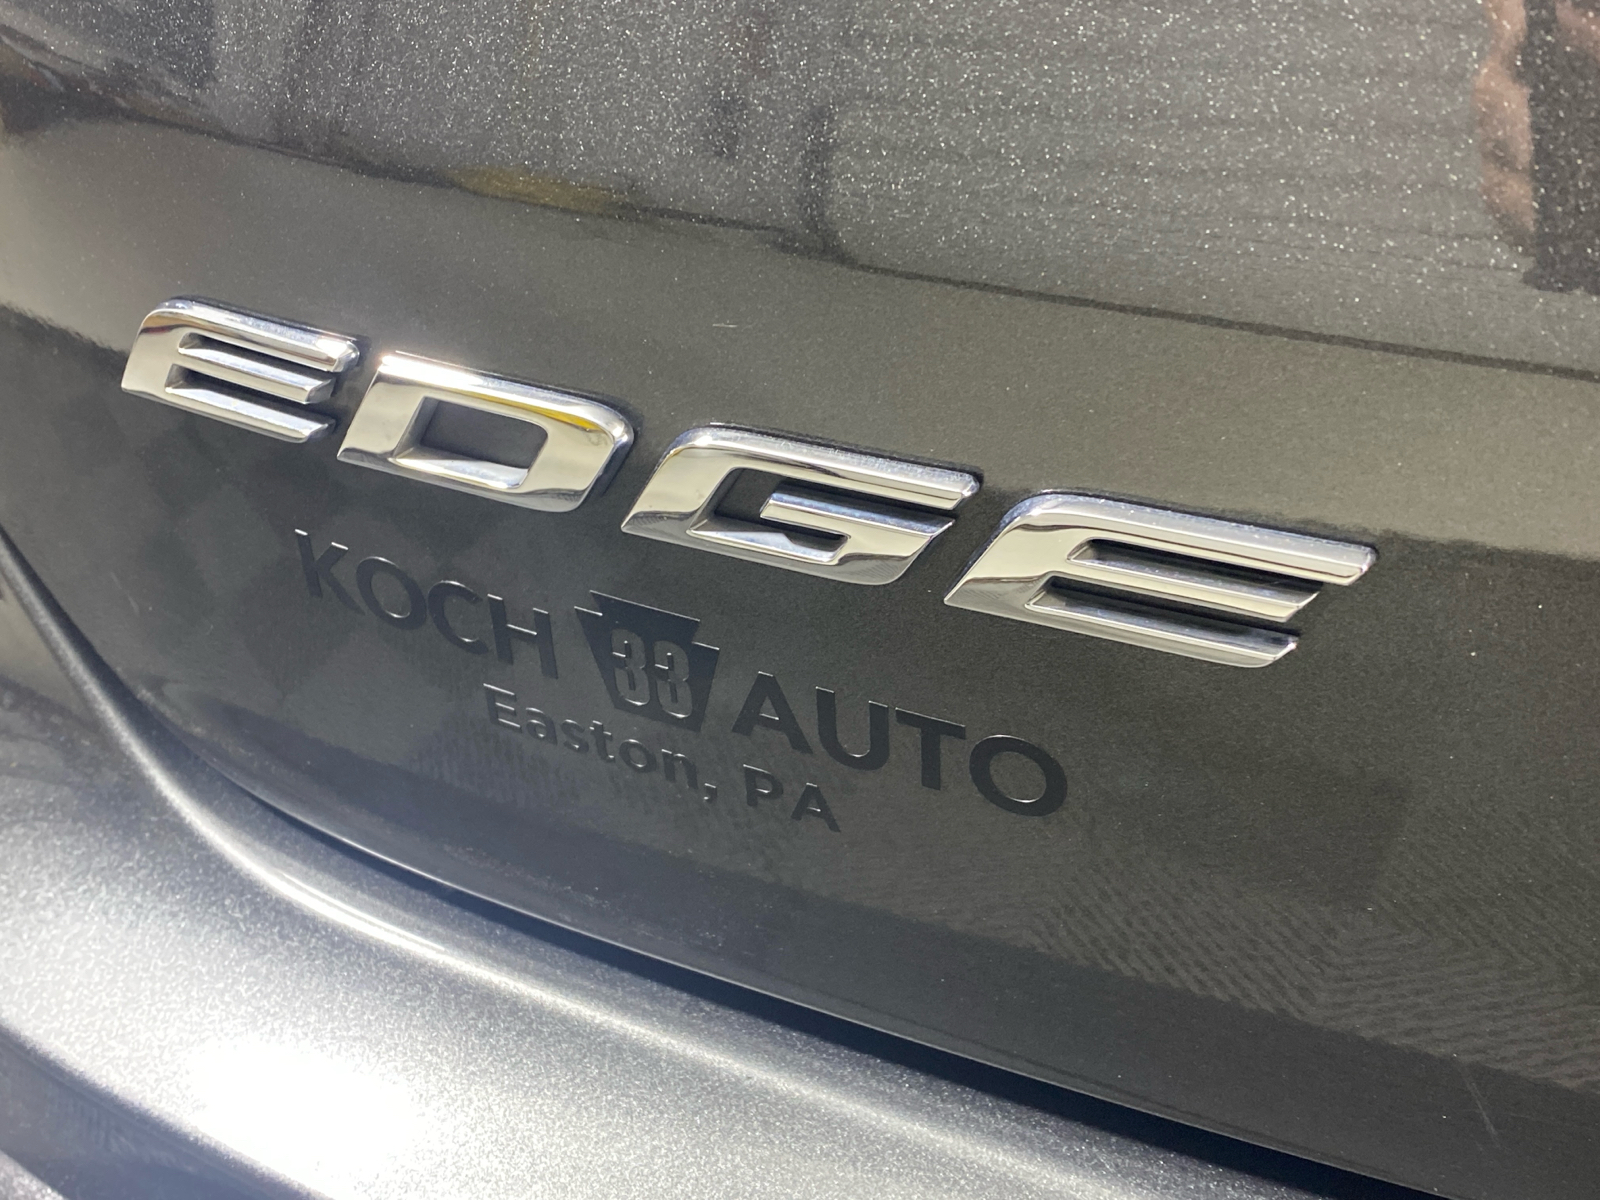 2019 Ford Edge Titanium 10